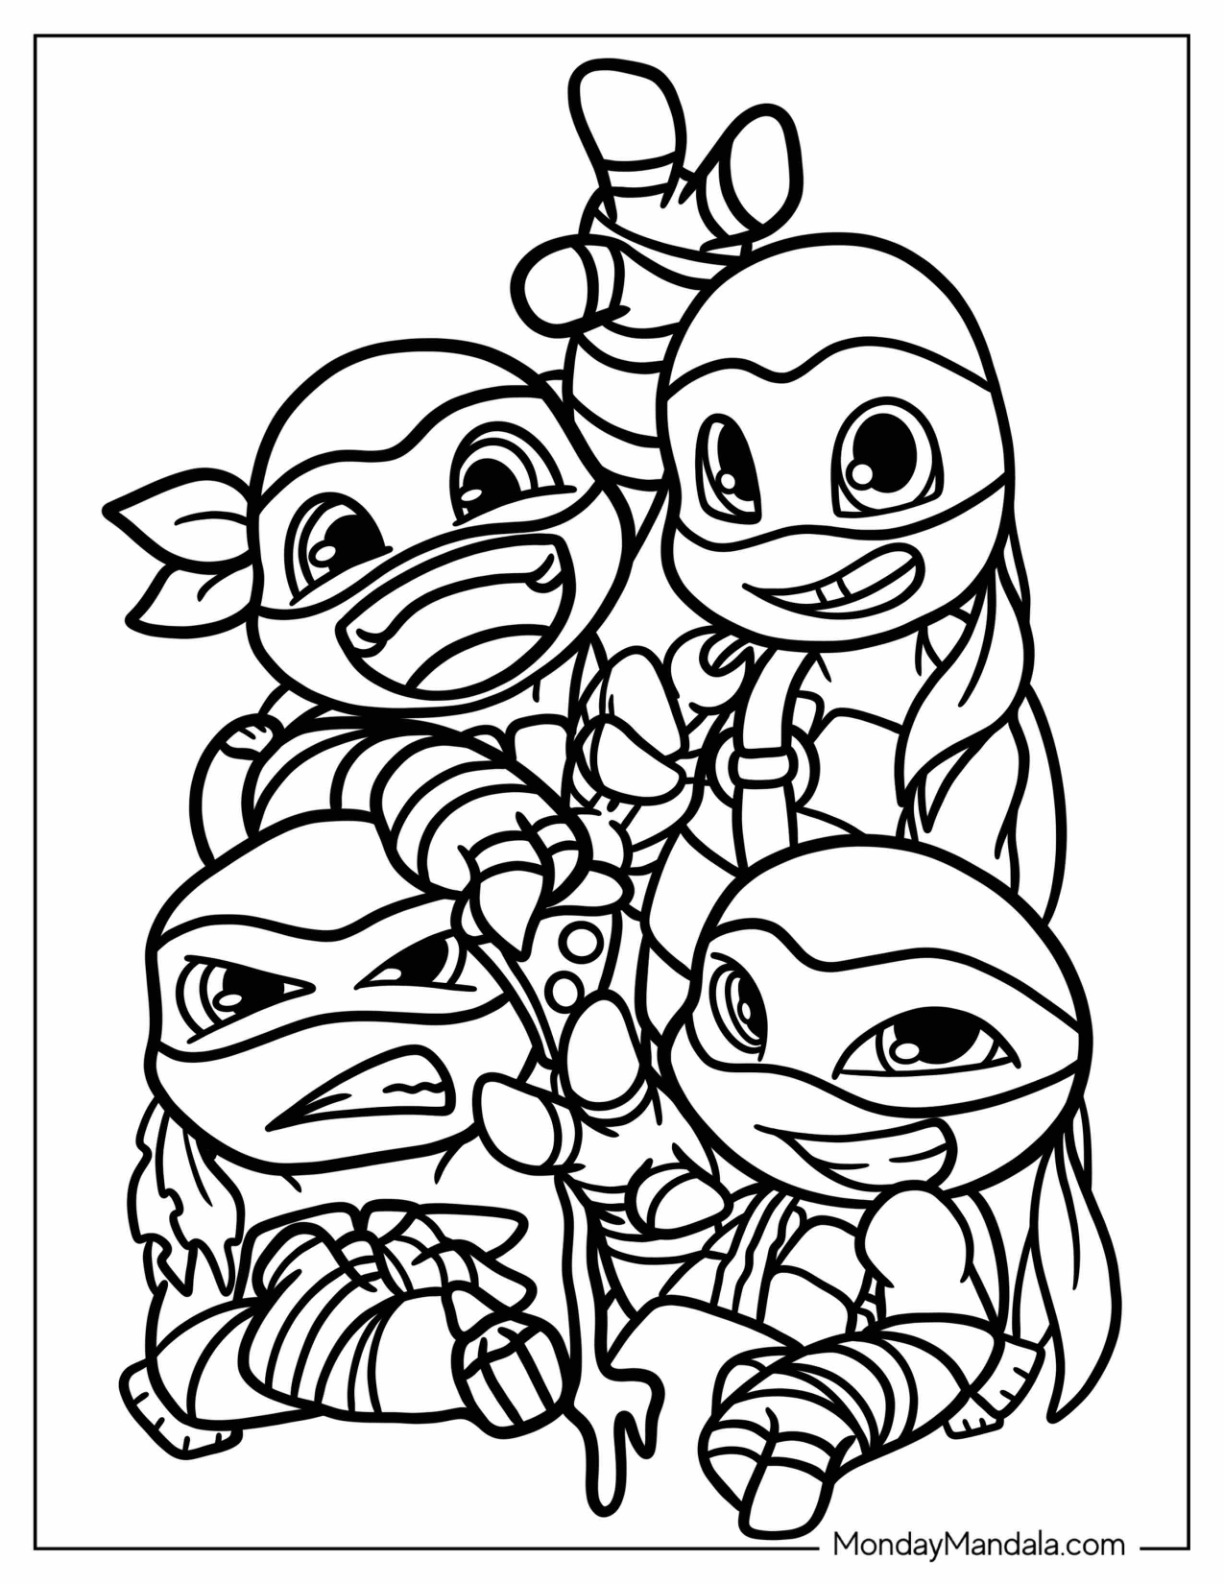 Ninja turtles coloring pages free pdf printables